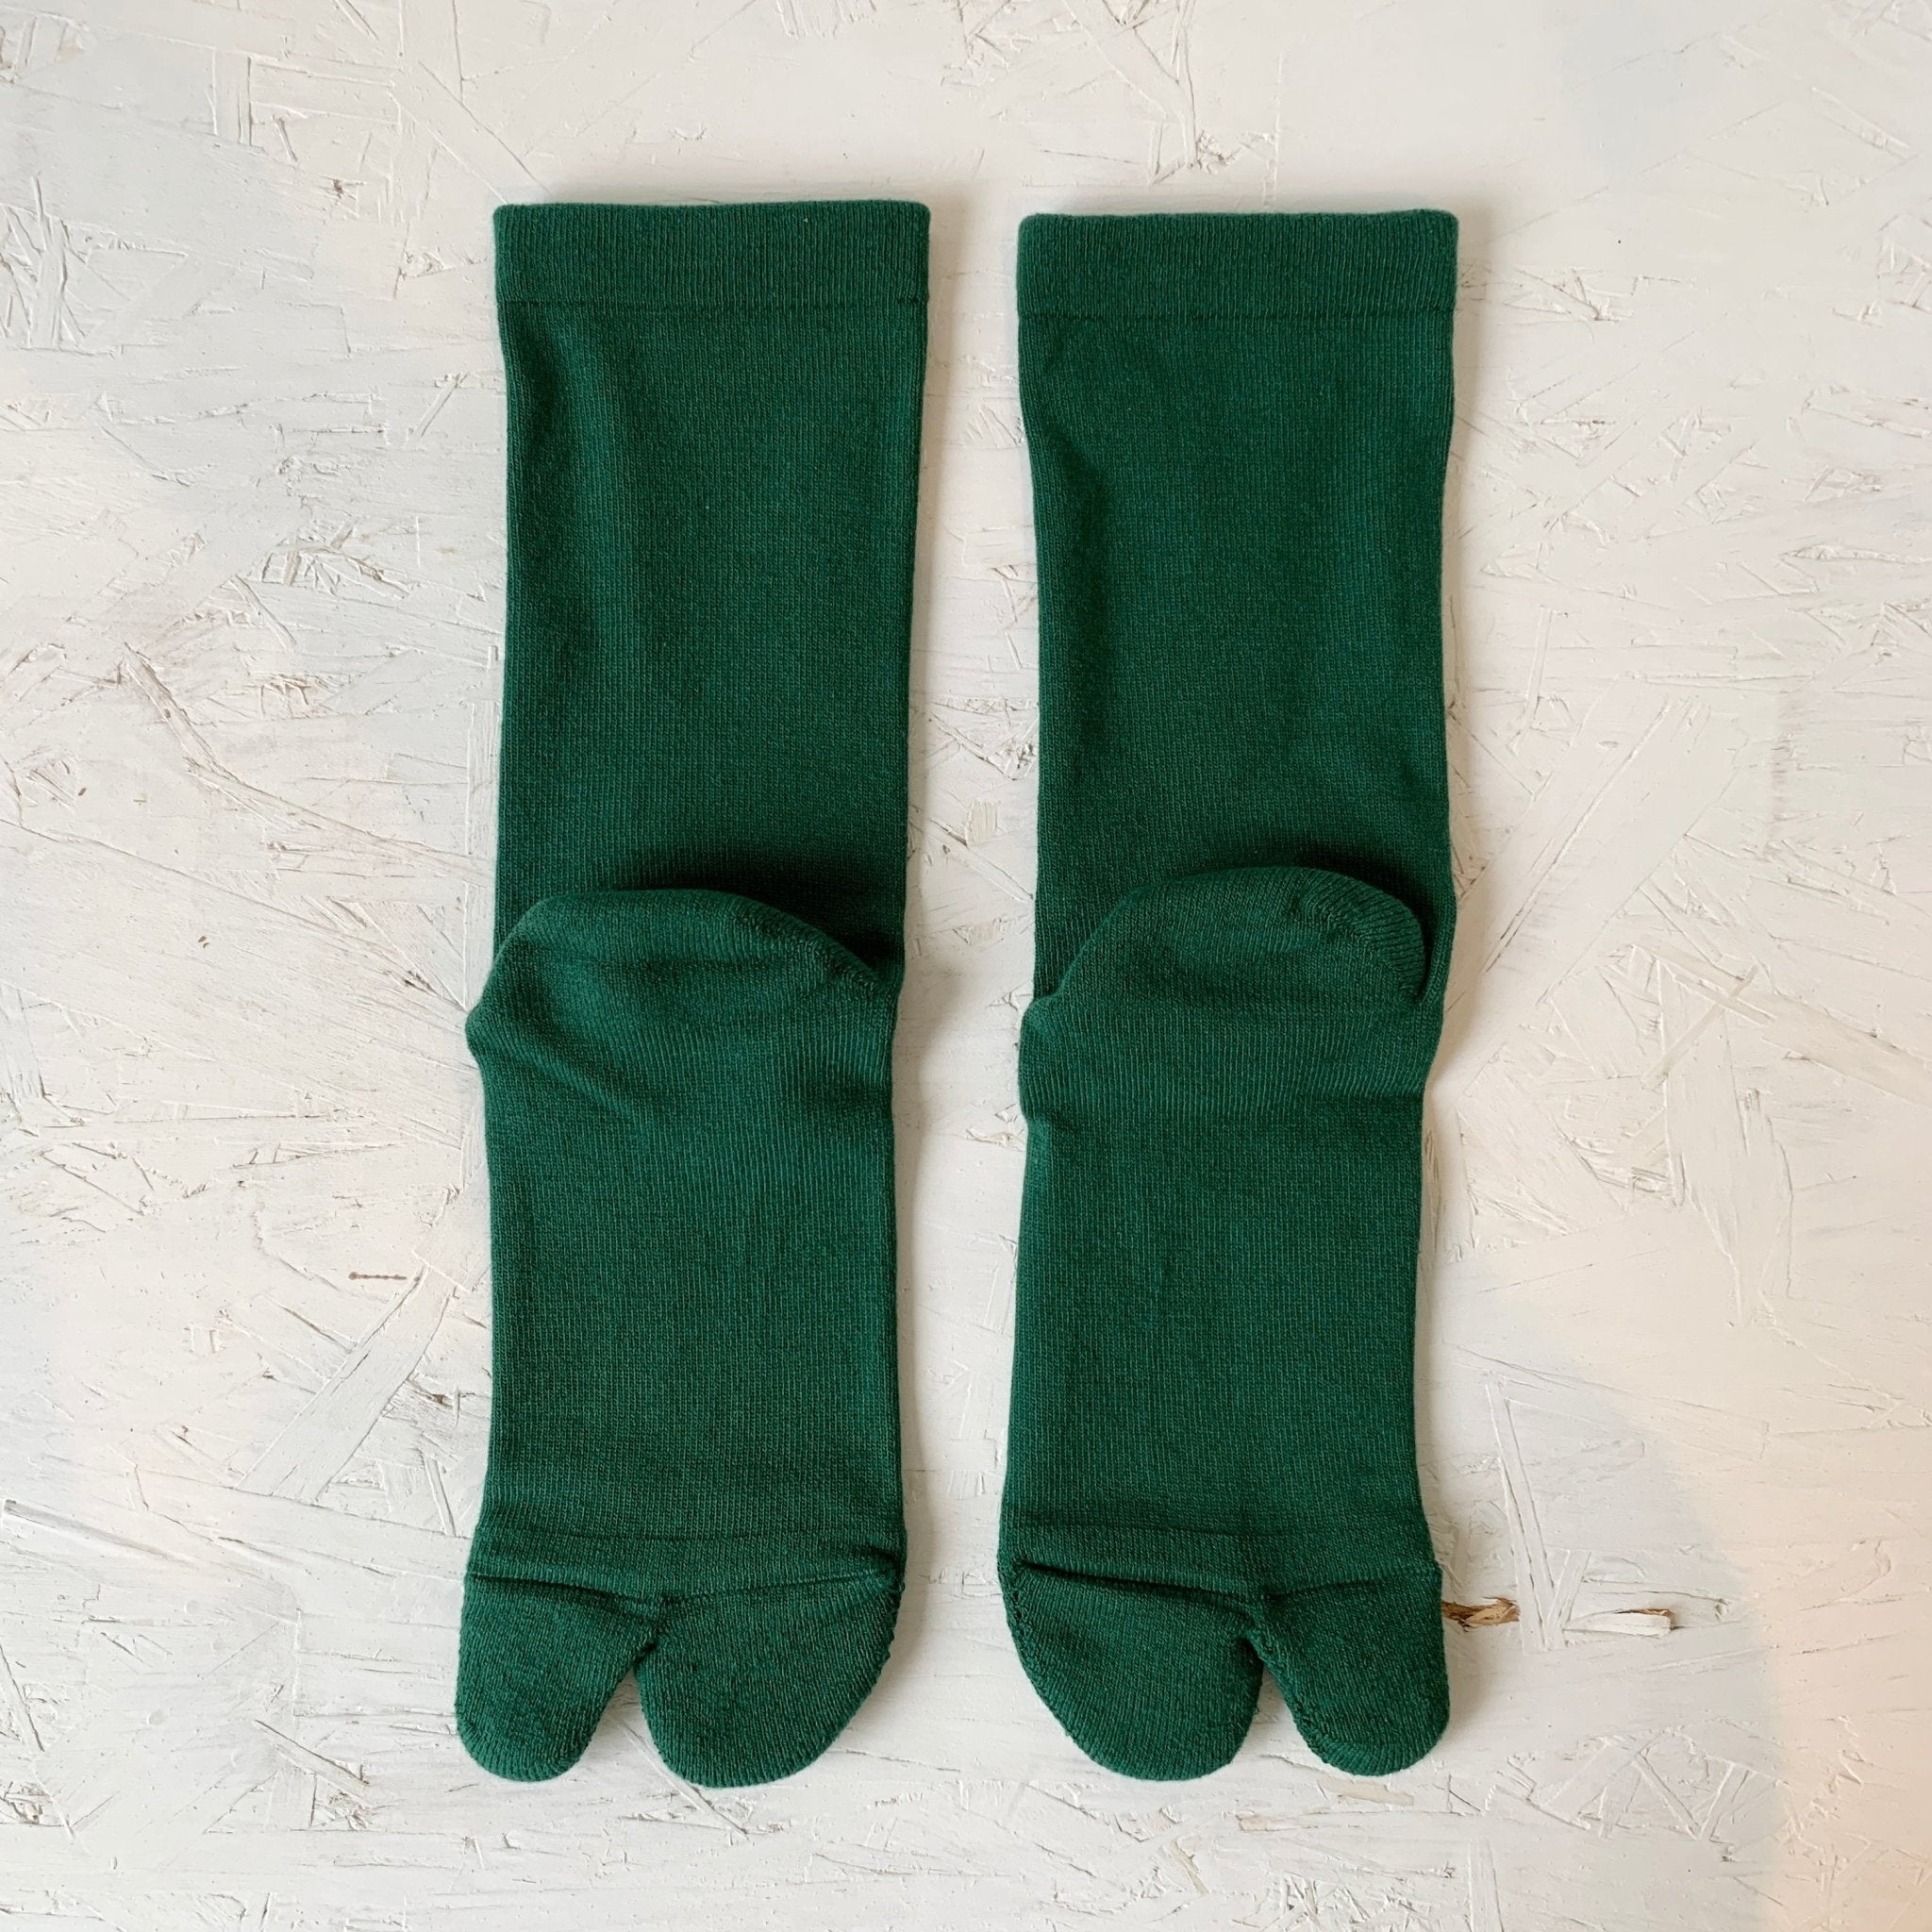 AMITABI Essential Tabi Socks Japanese soaks cotton soaks eco